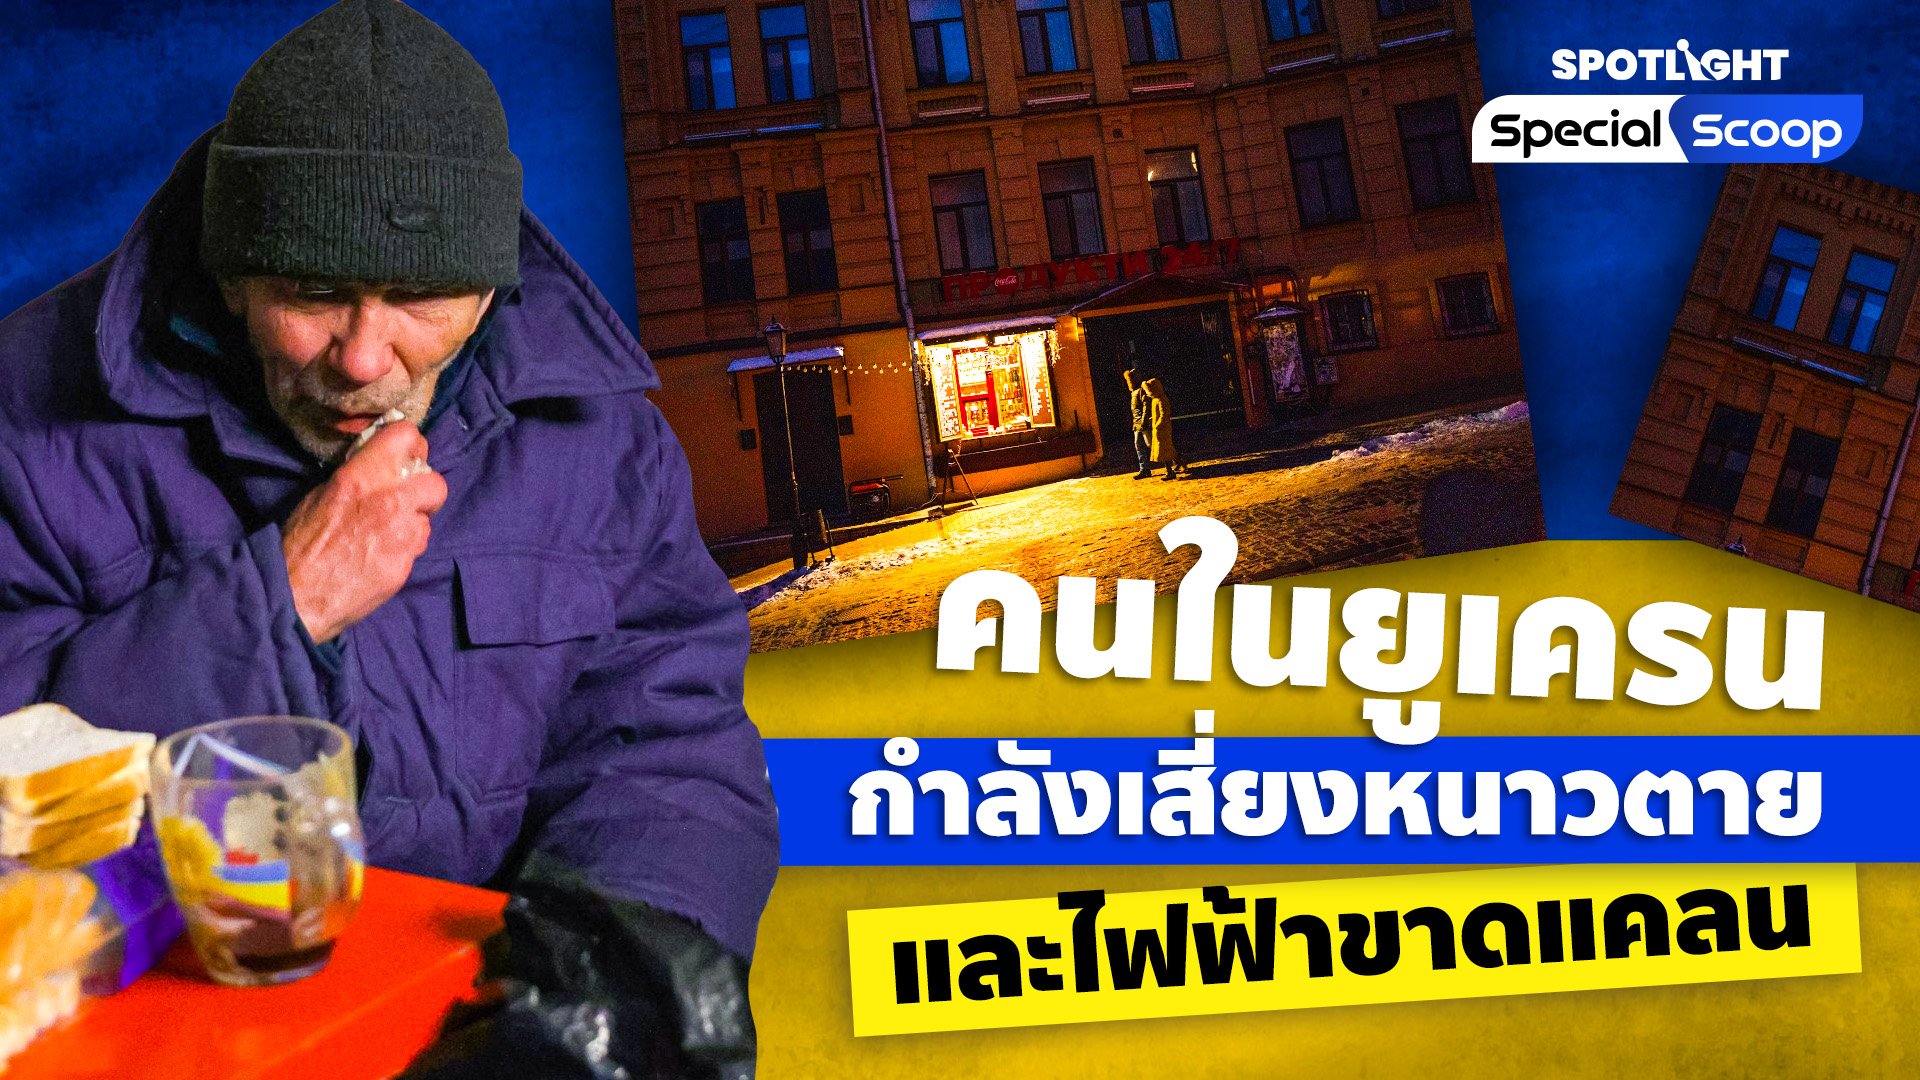 คนในยูเครนกำลังเสี่ยงหนาวตายและไฟฟ้าขาดแคลน | Spotlight | 8 ธ.ค. 65 | AMARIN TVHD34